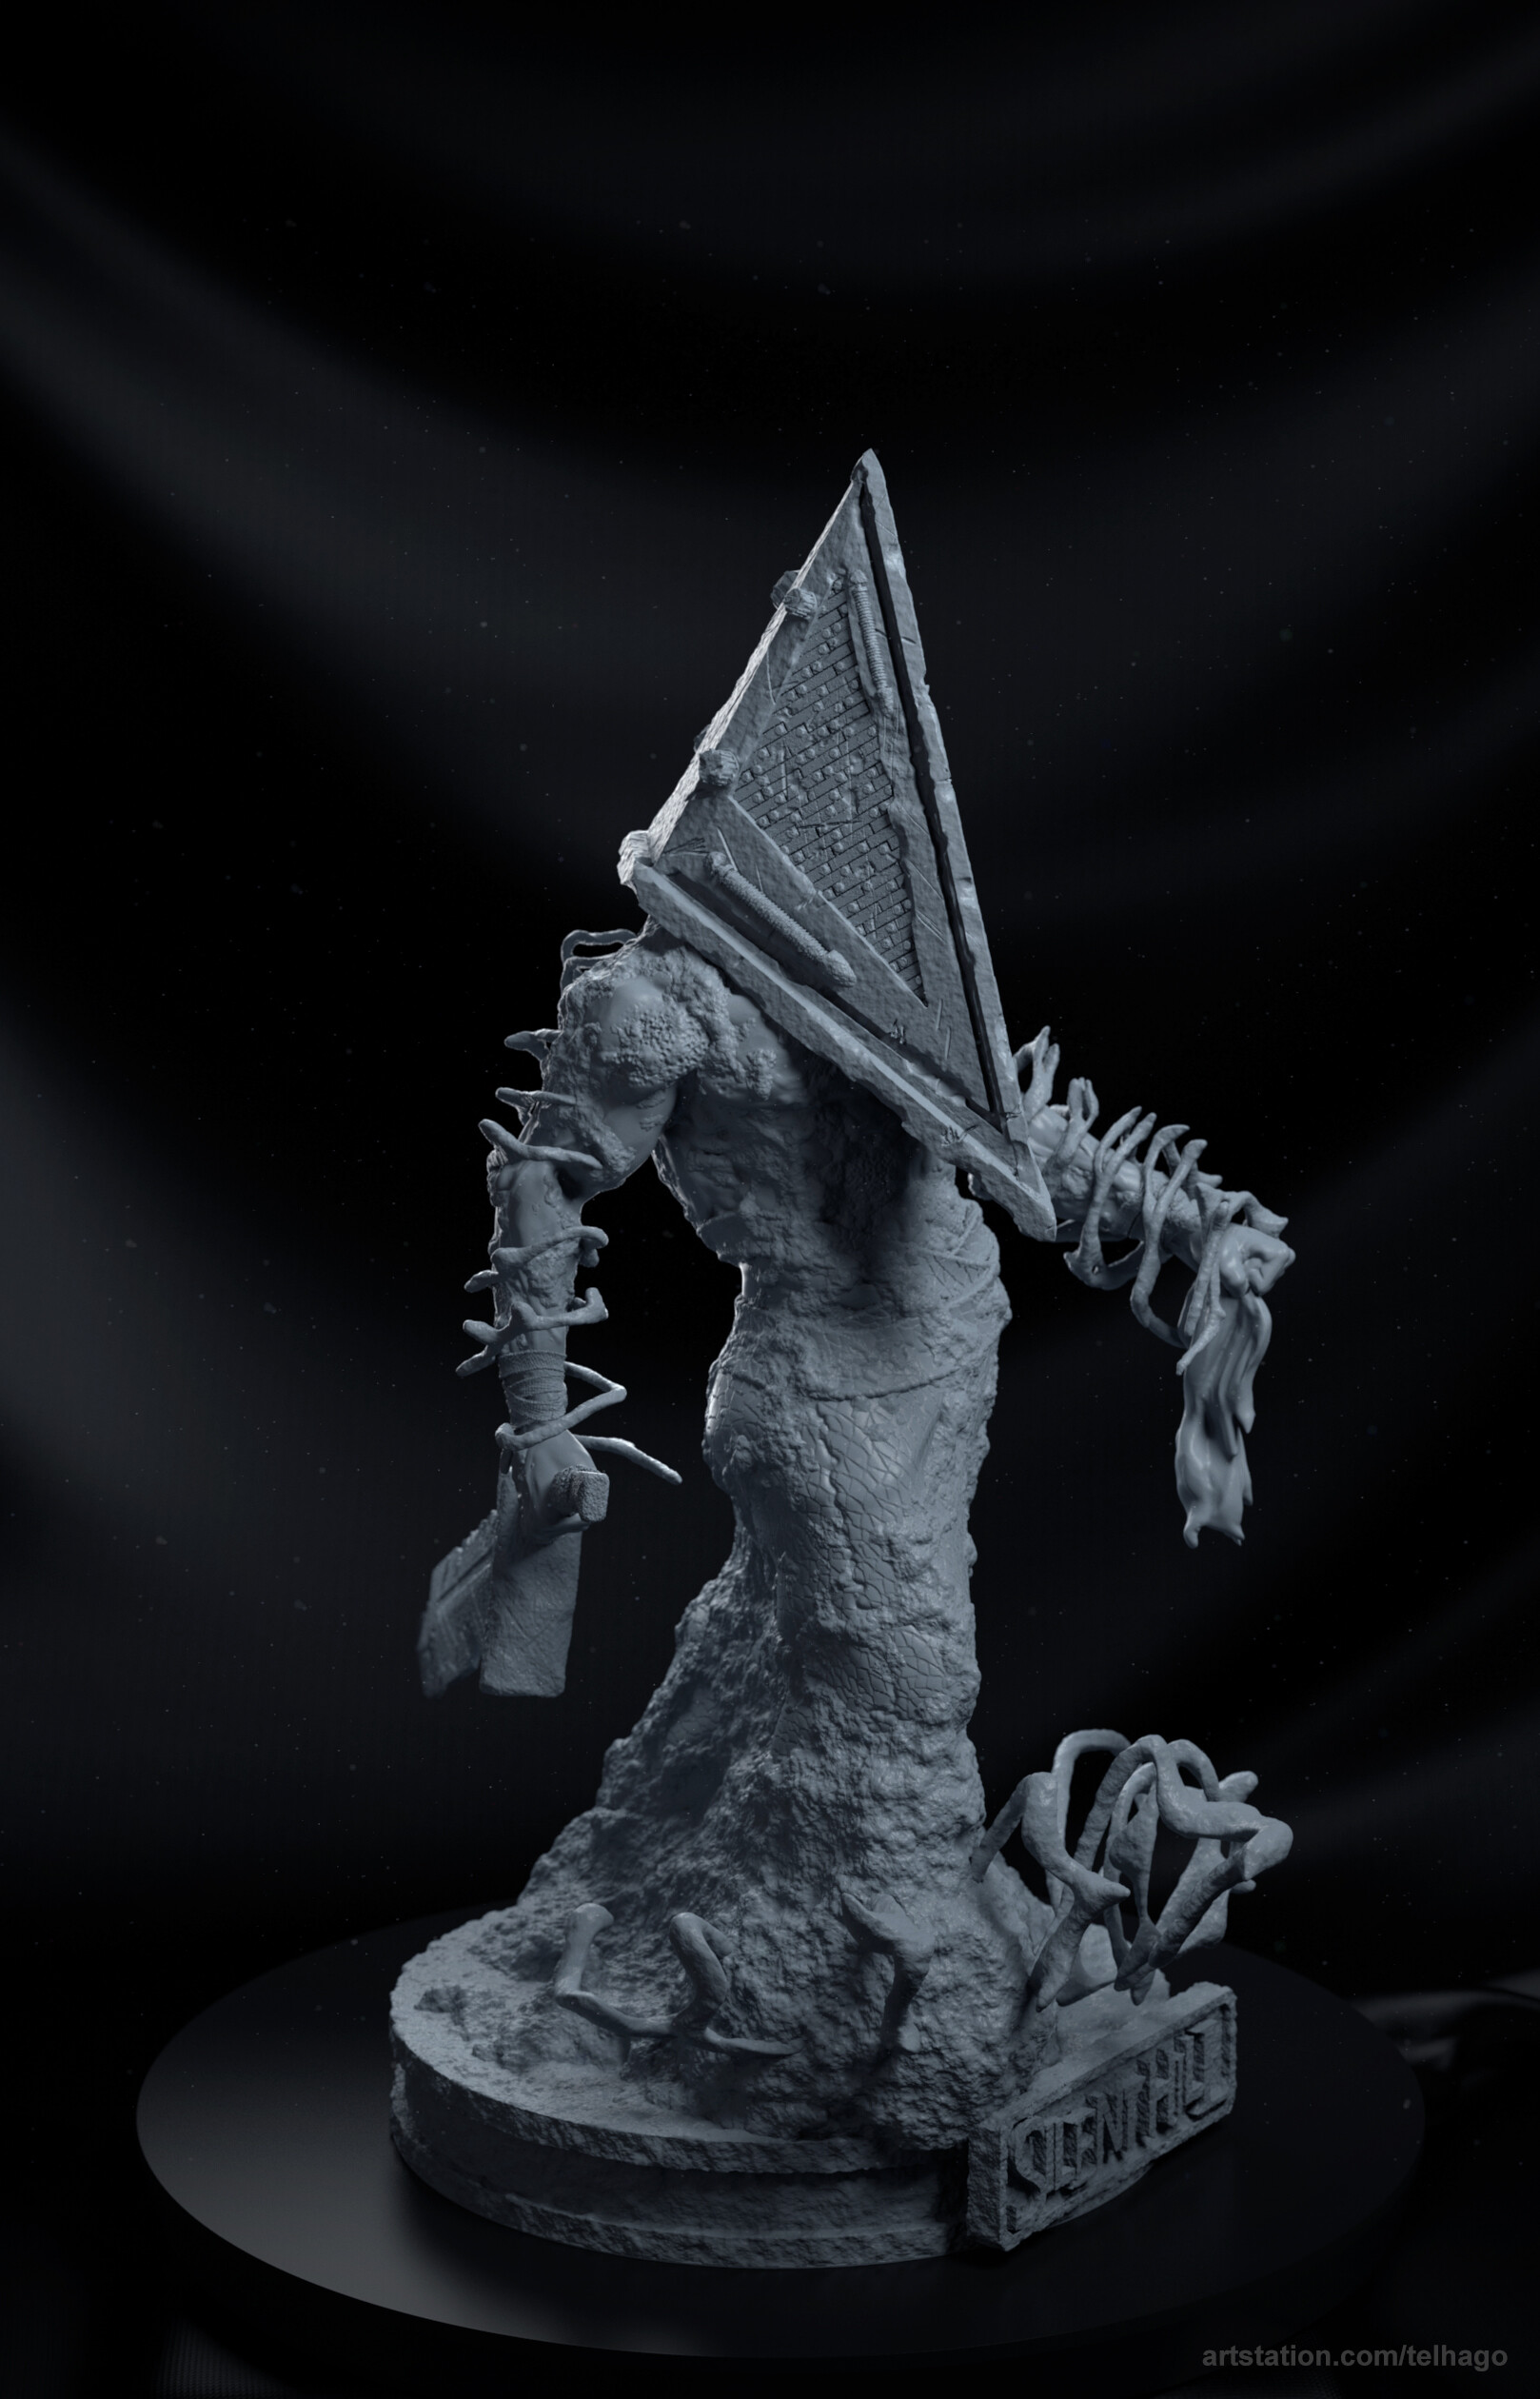 ArtStation - Pyramid head fanart